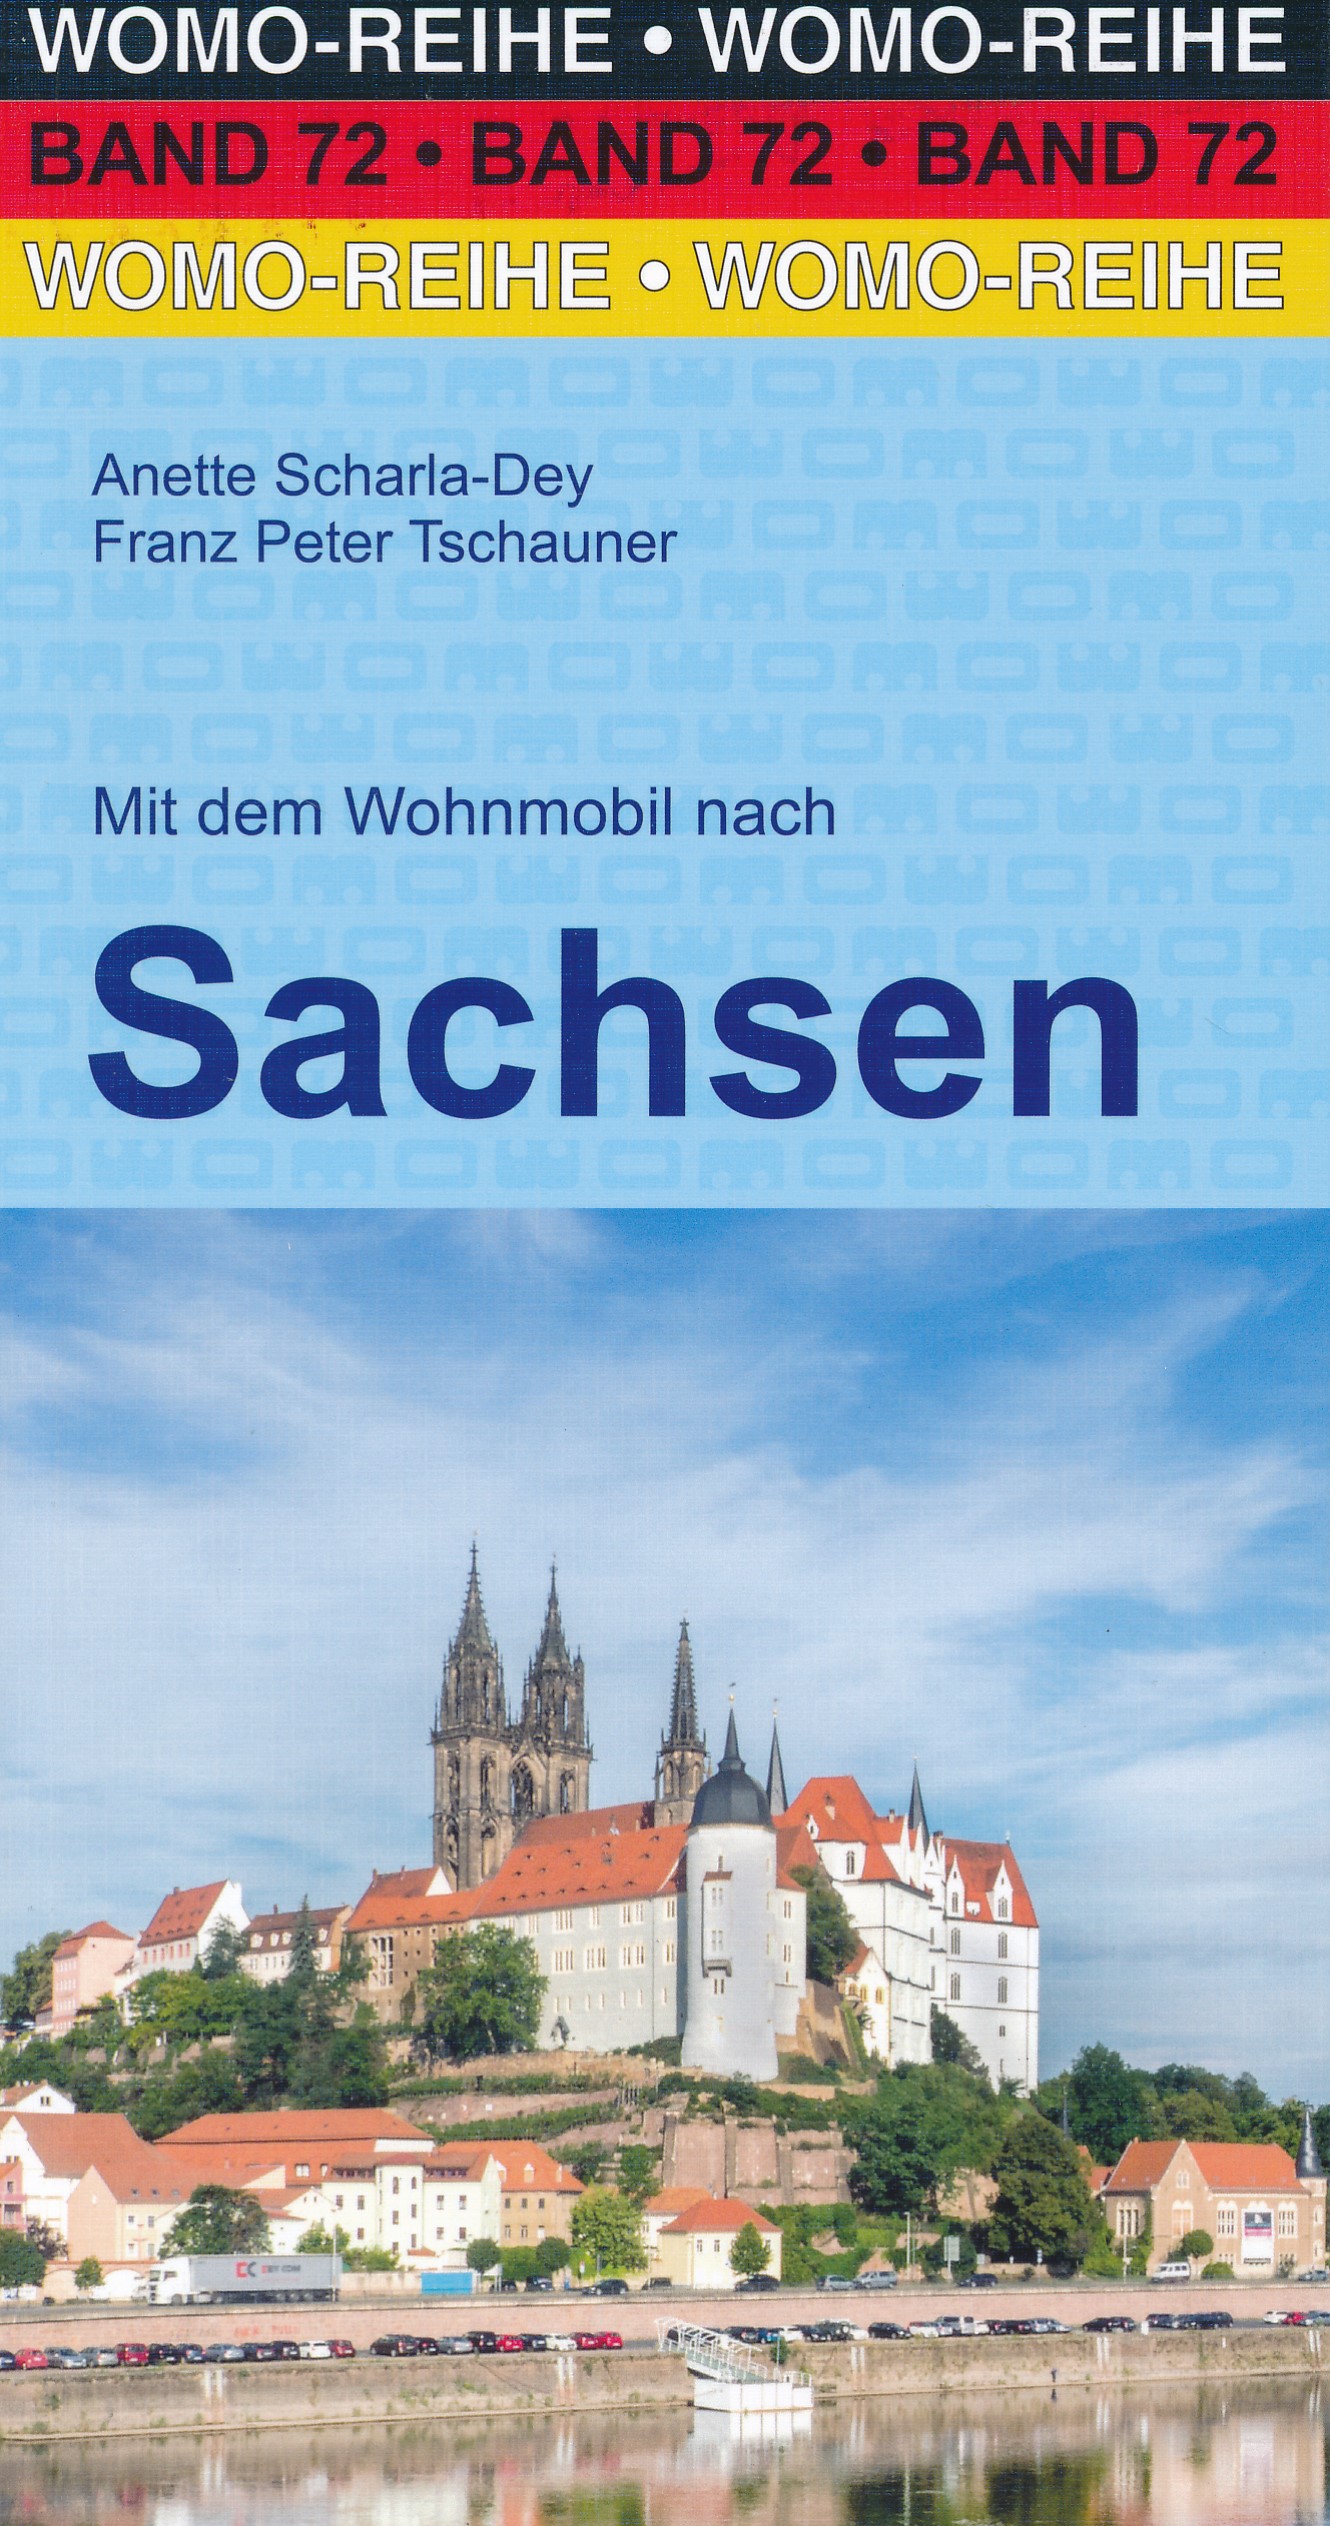 Online bestellen: Campergids 72 Mit dem Wohnmobil nach Sachsen (Duitsland) | WOMO verlag